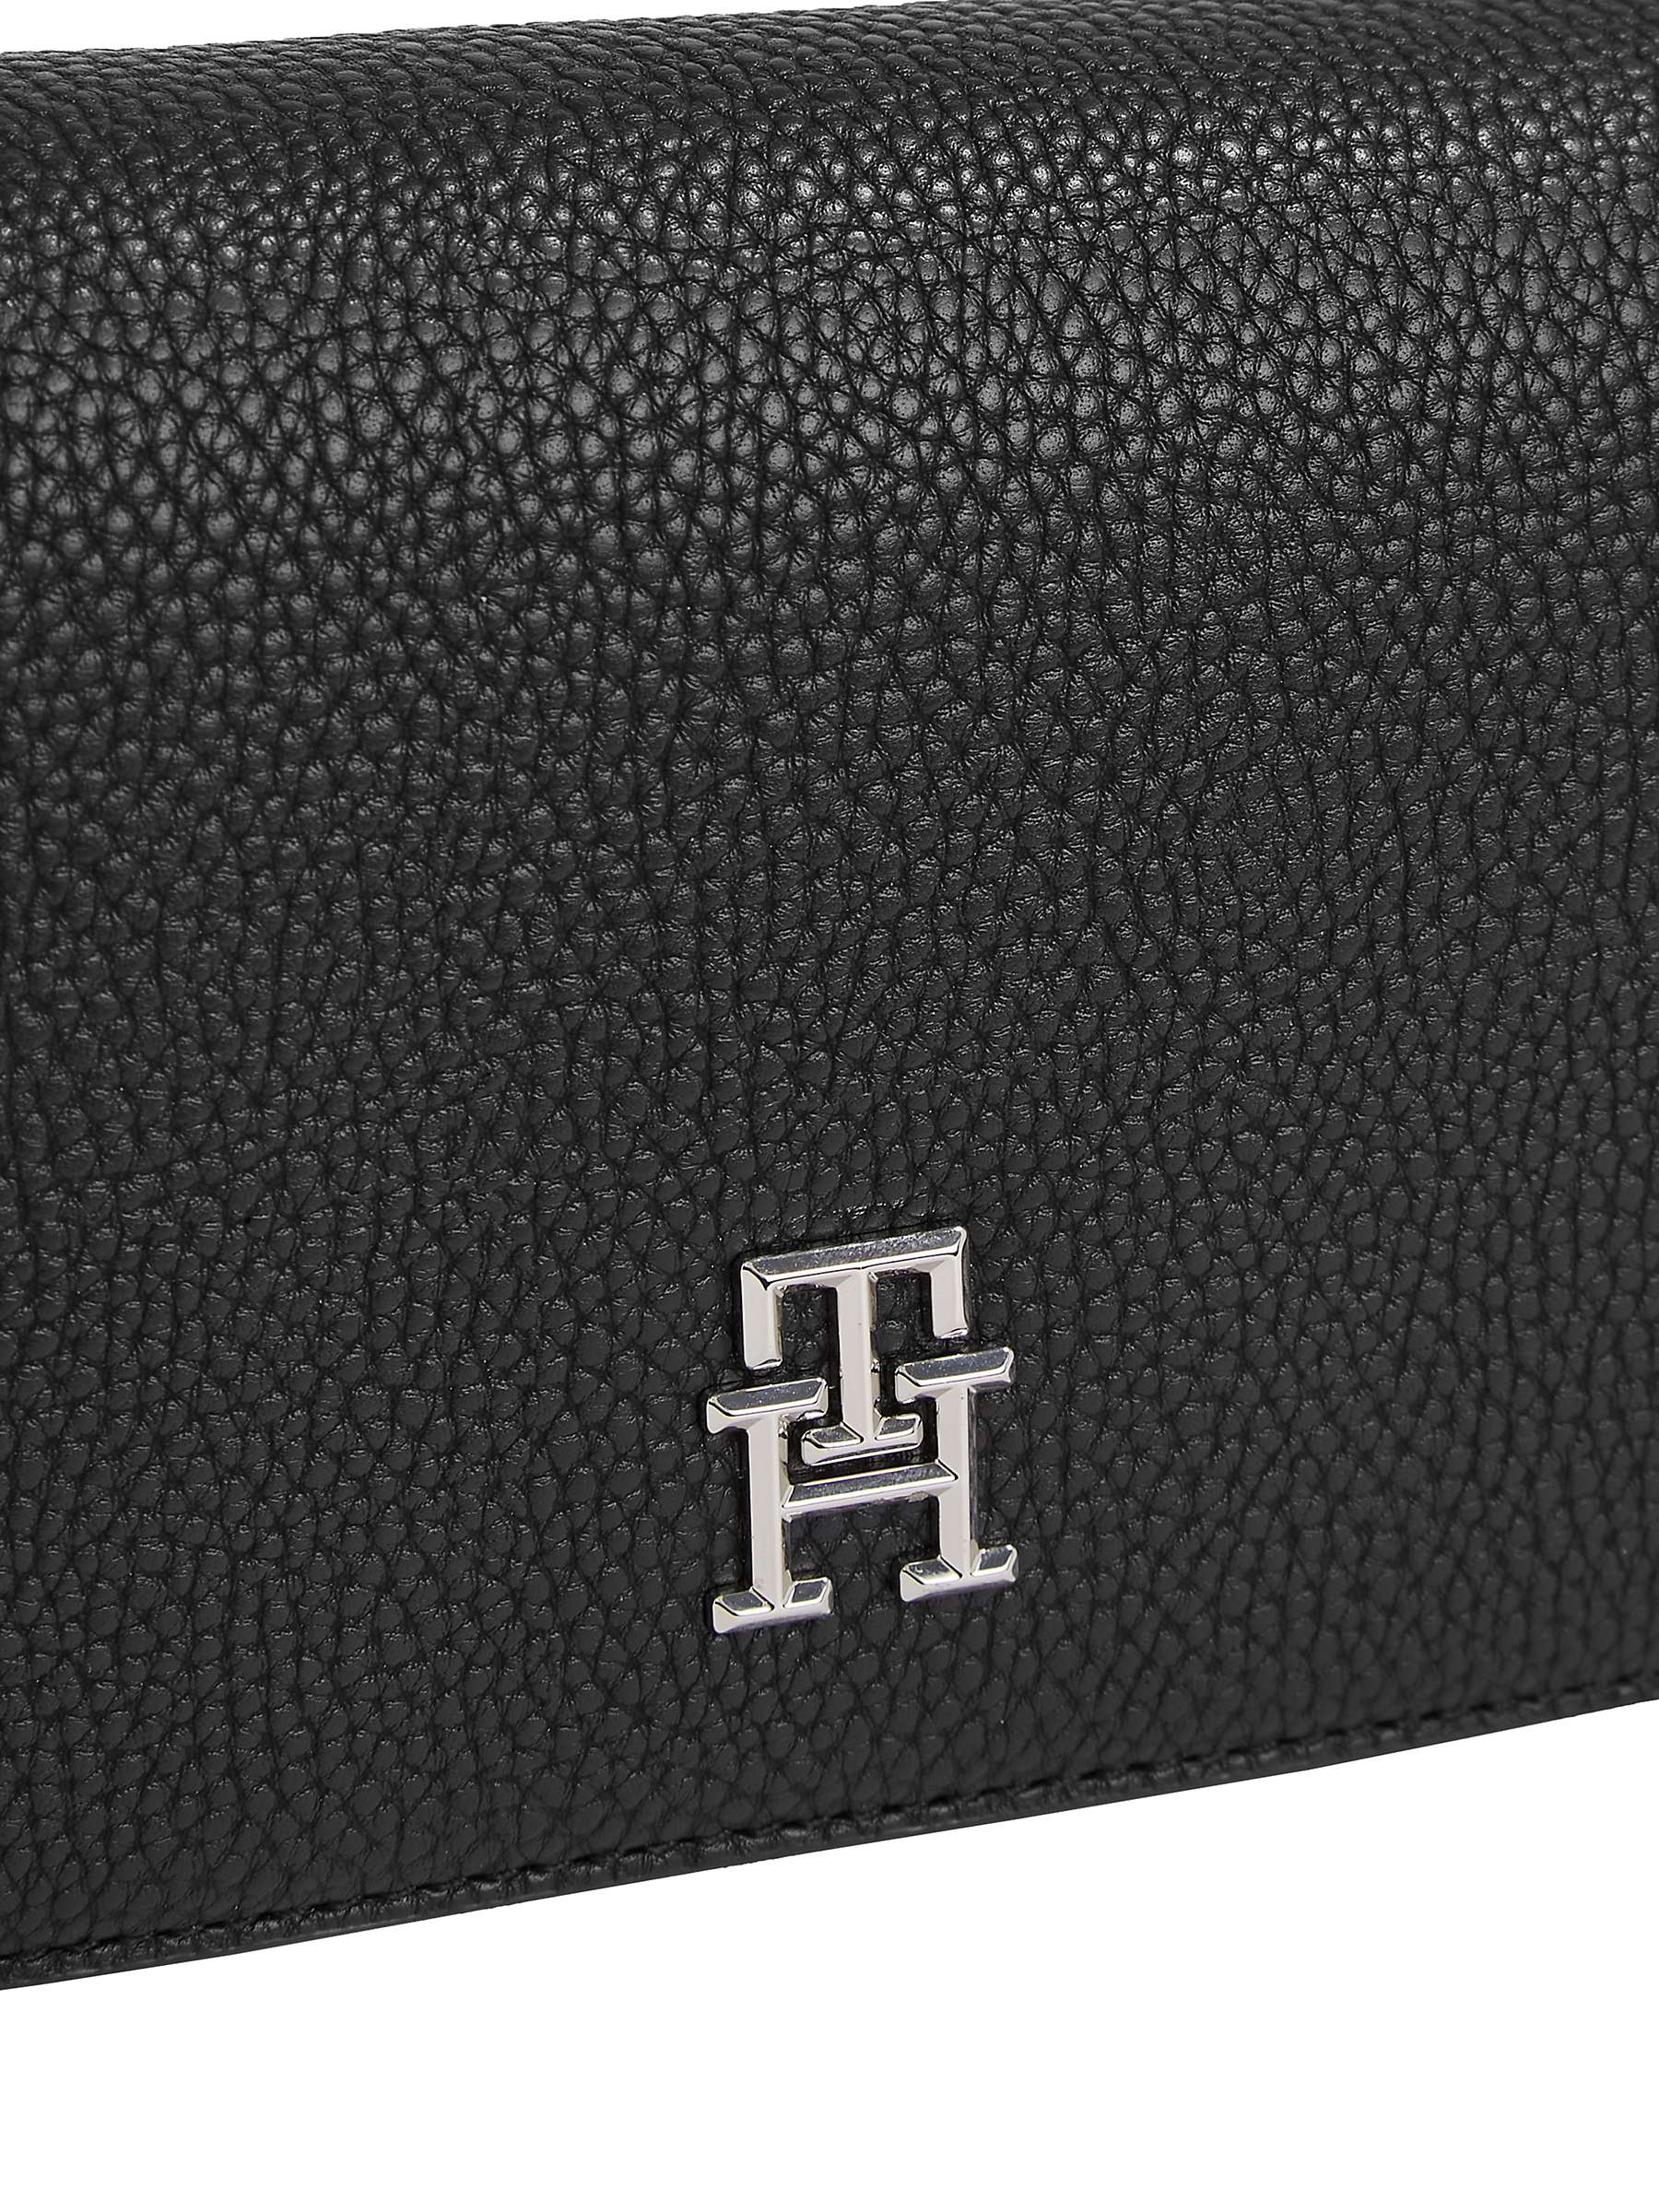 Buy Tommy Hilfiger Emblem Flap Over Crossbody Bag, Black Online at johnlewis.com